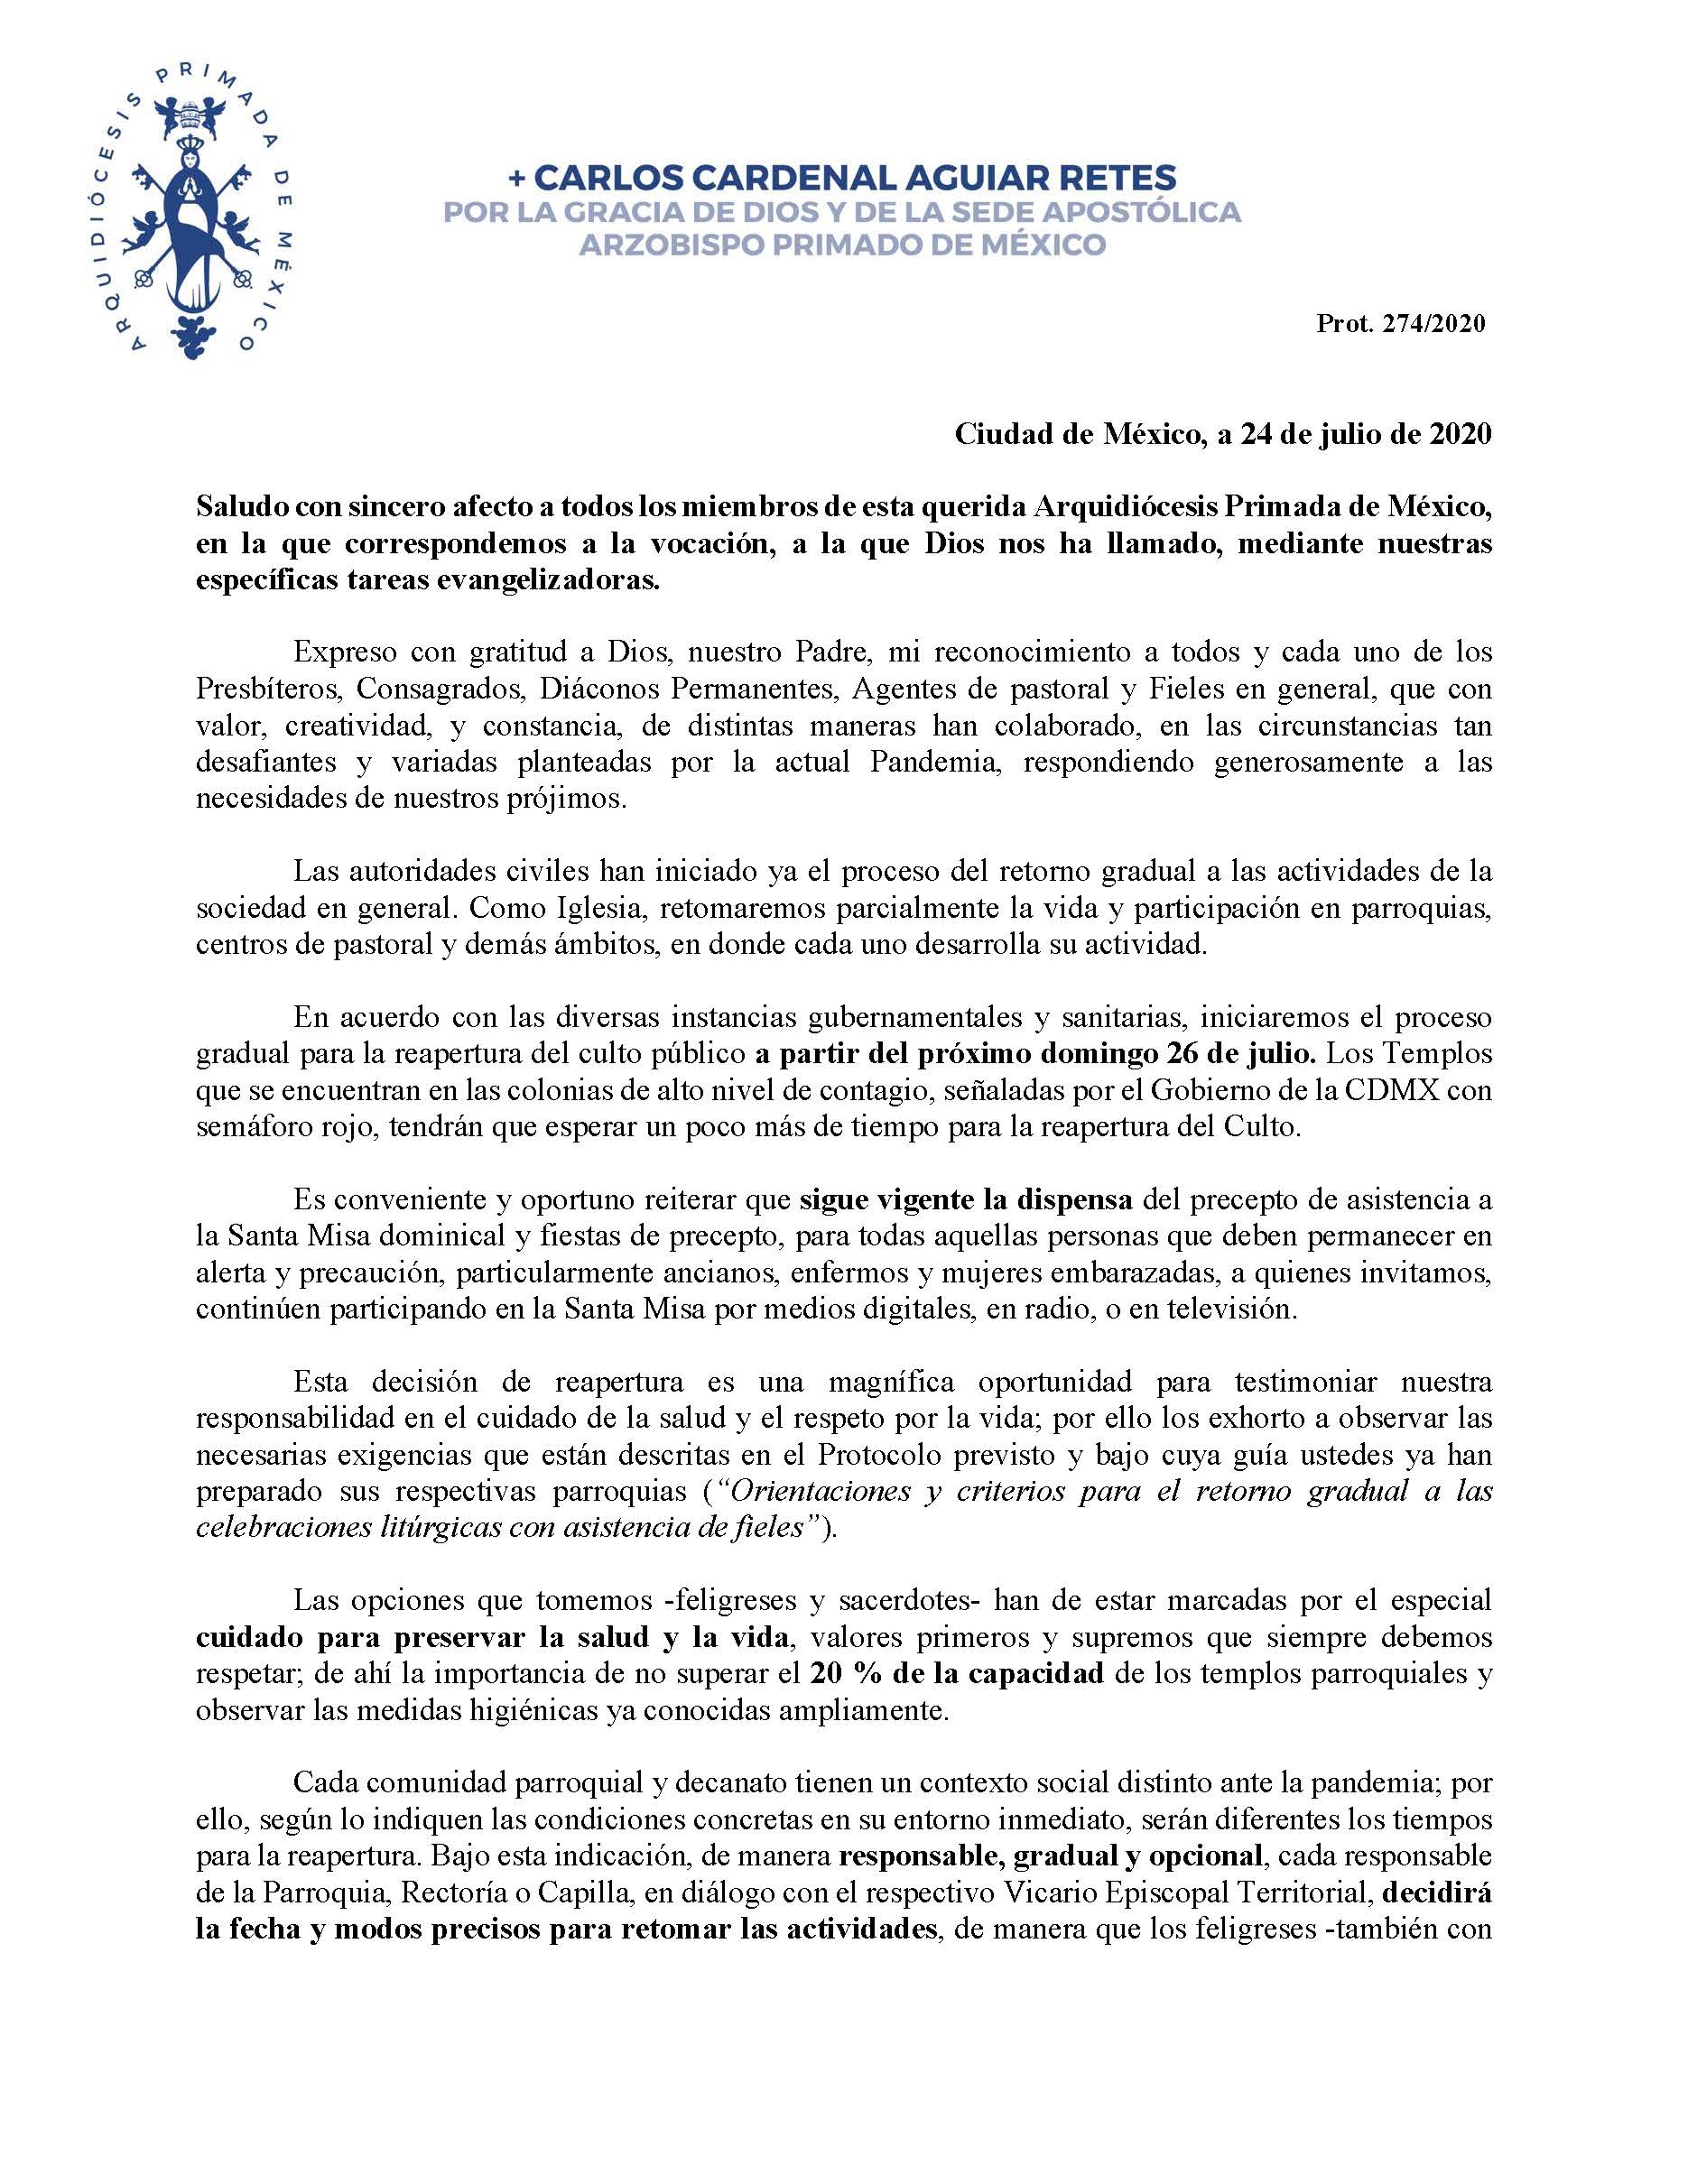 200724 Arquidiocesis Primada de Mexico Decreto para la reapertura del Culto público Página 1